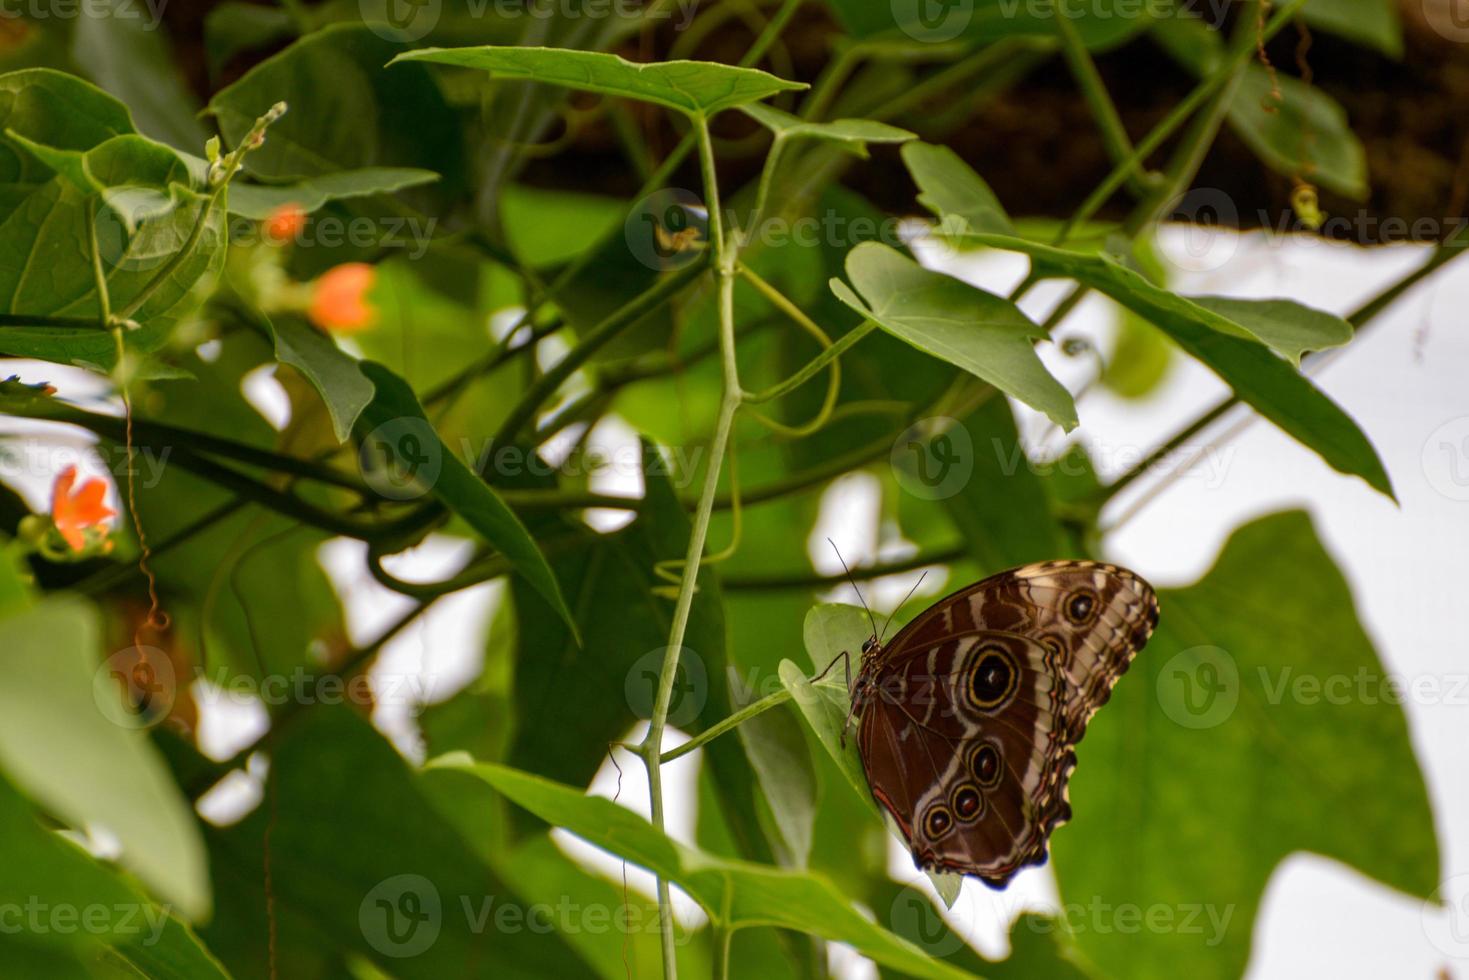 uil vlinder, caligo herinnering, foto